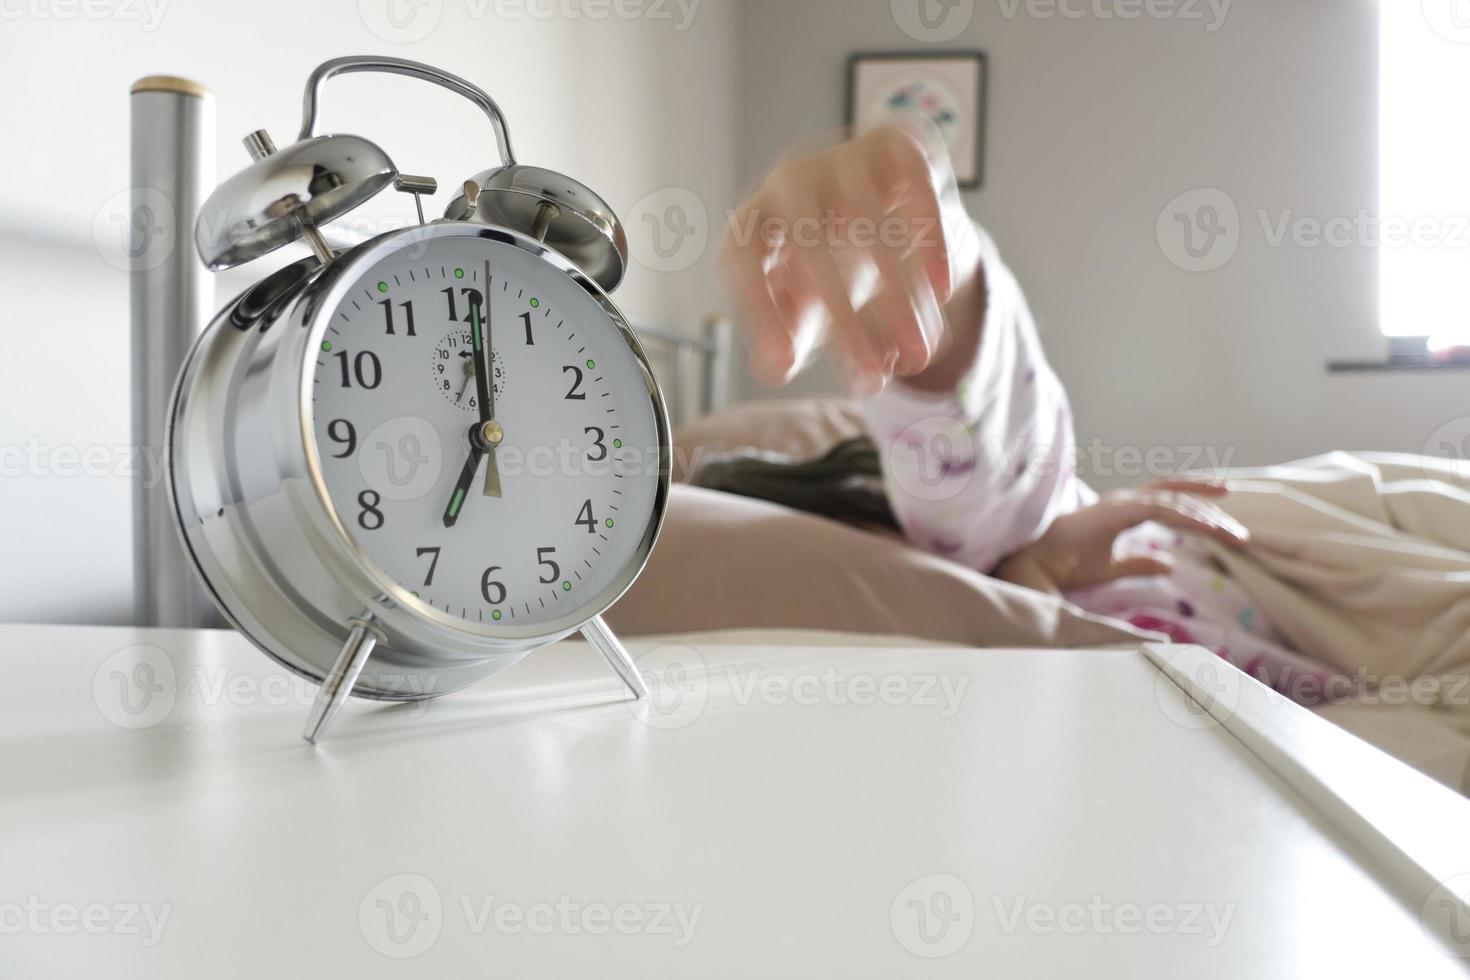 mulher com sono chegando para desligar o despertador foto